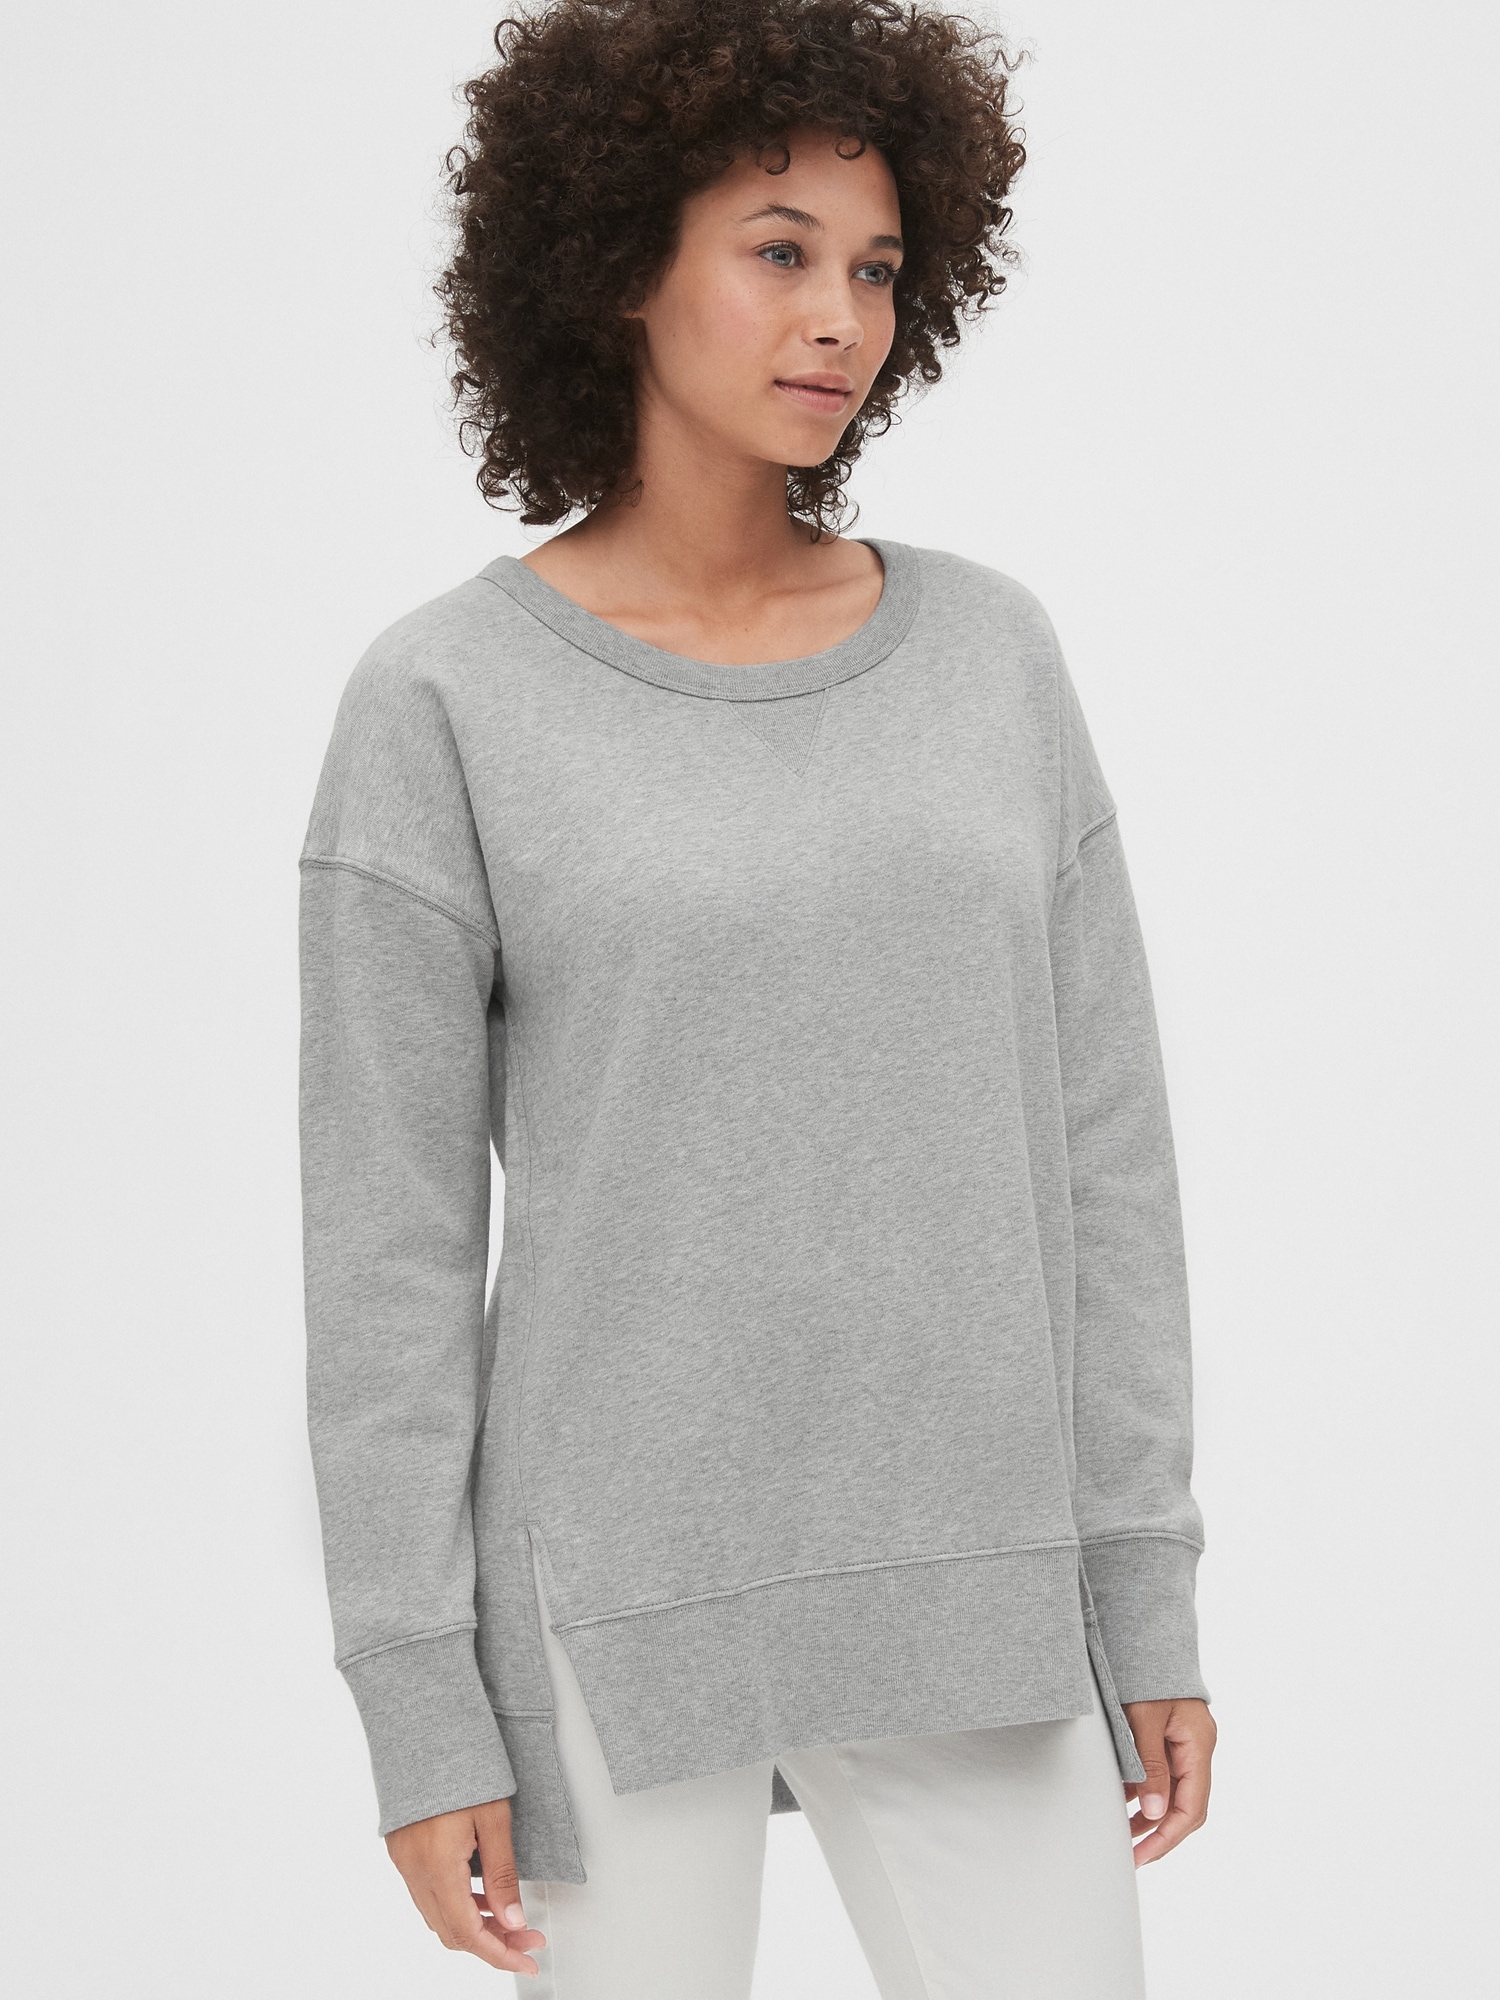 grey tunic sweatshirt